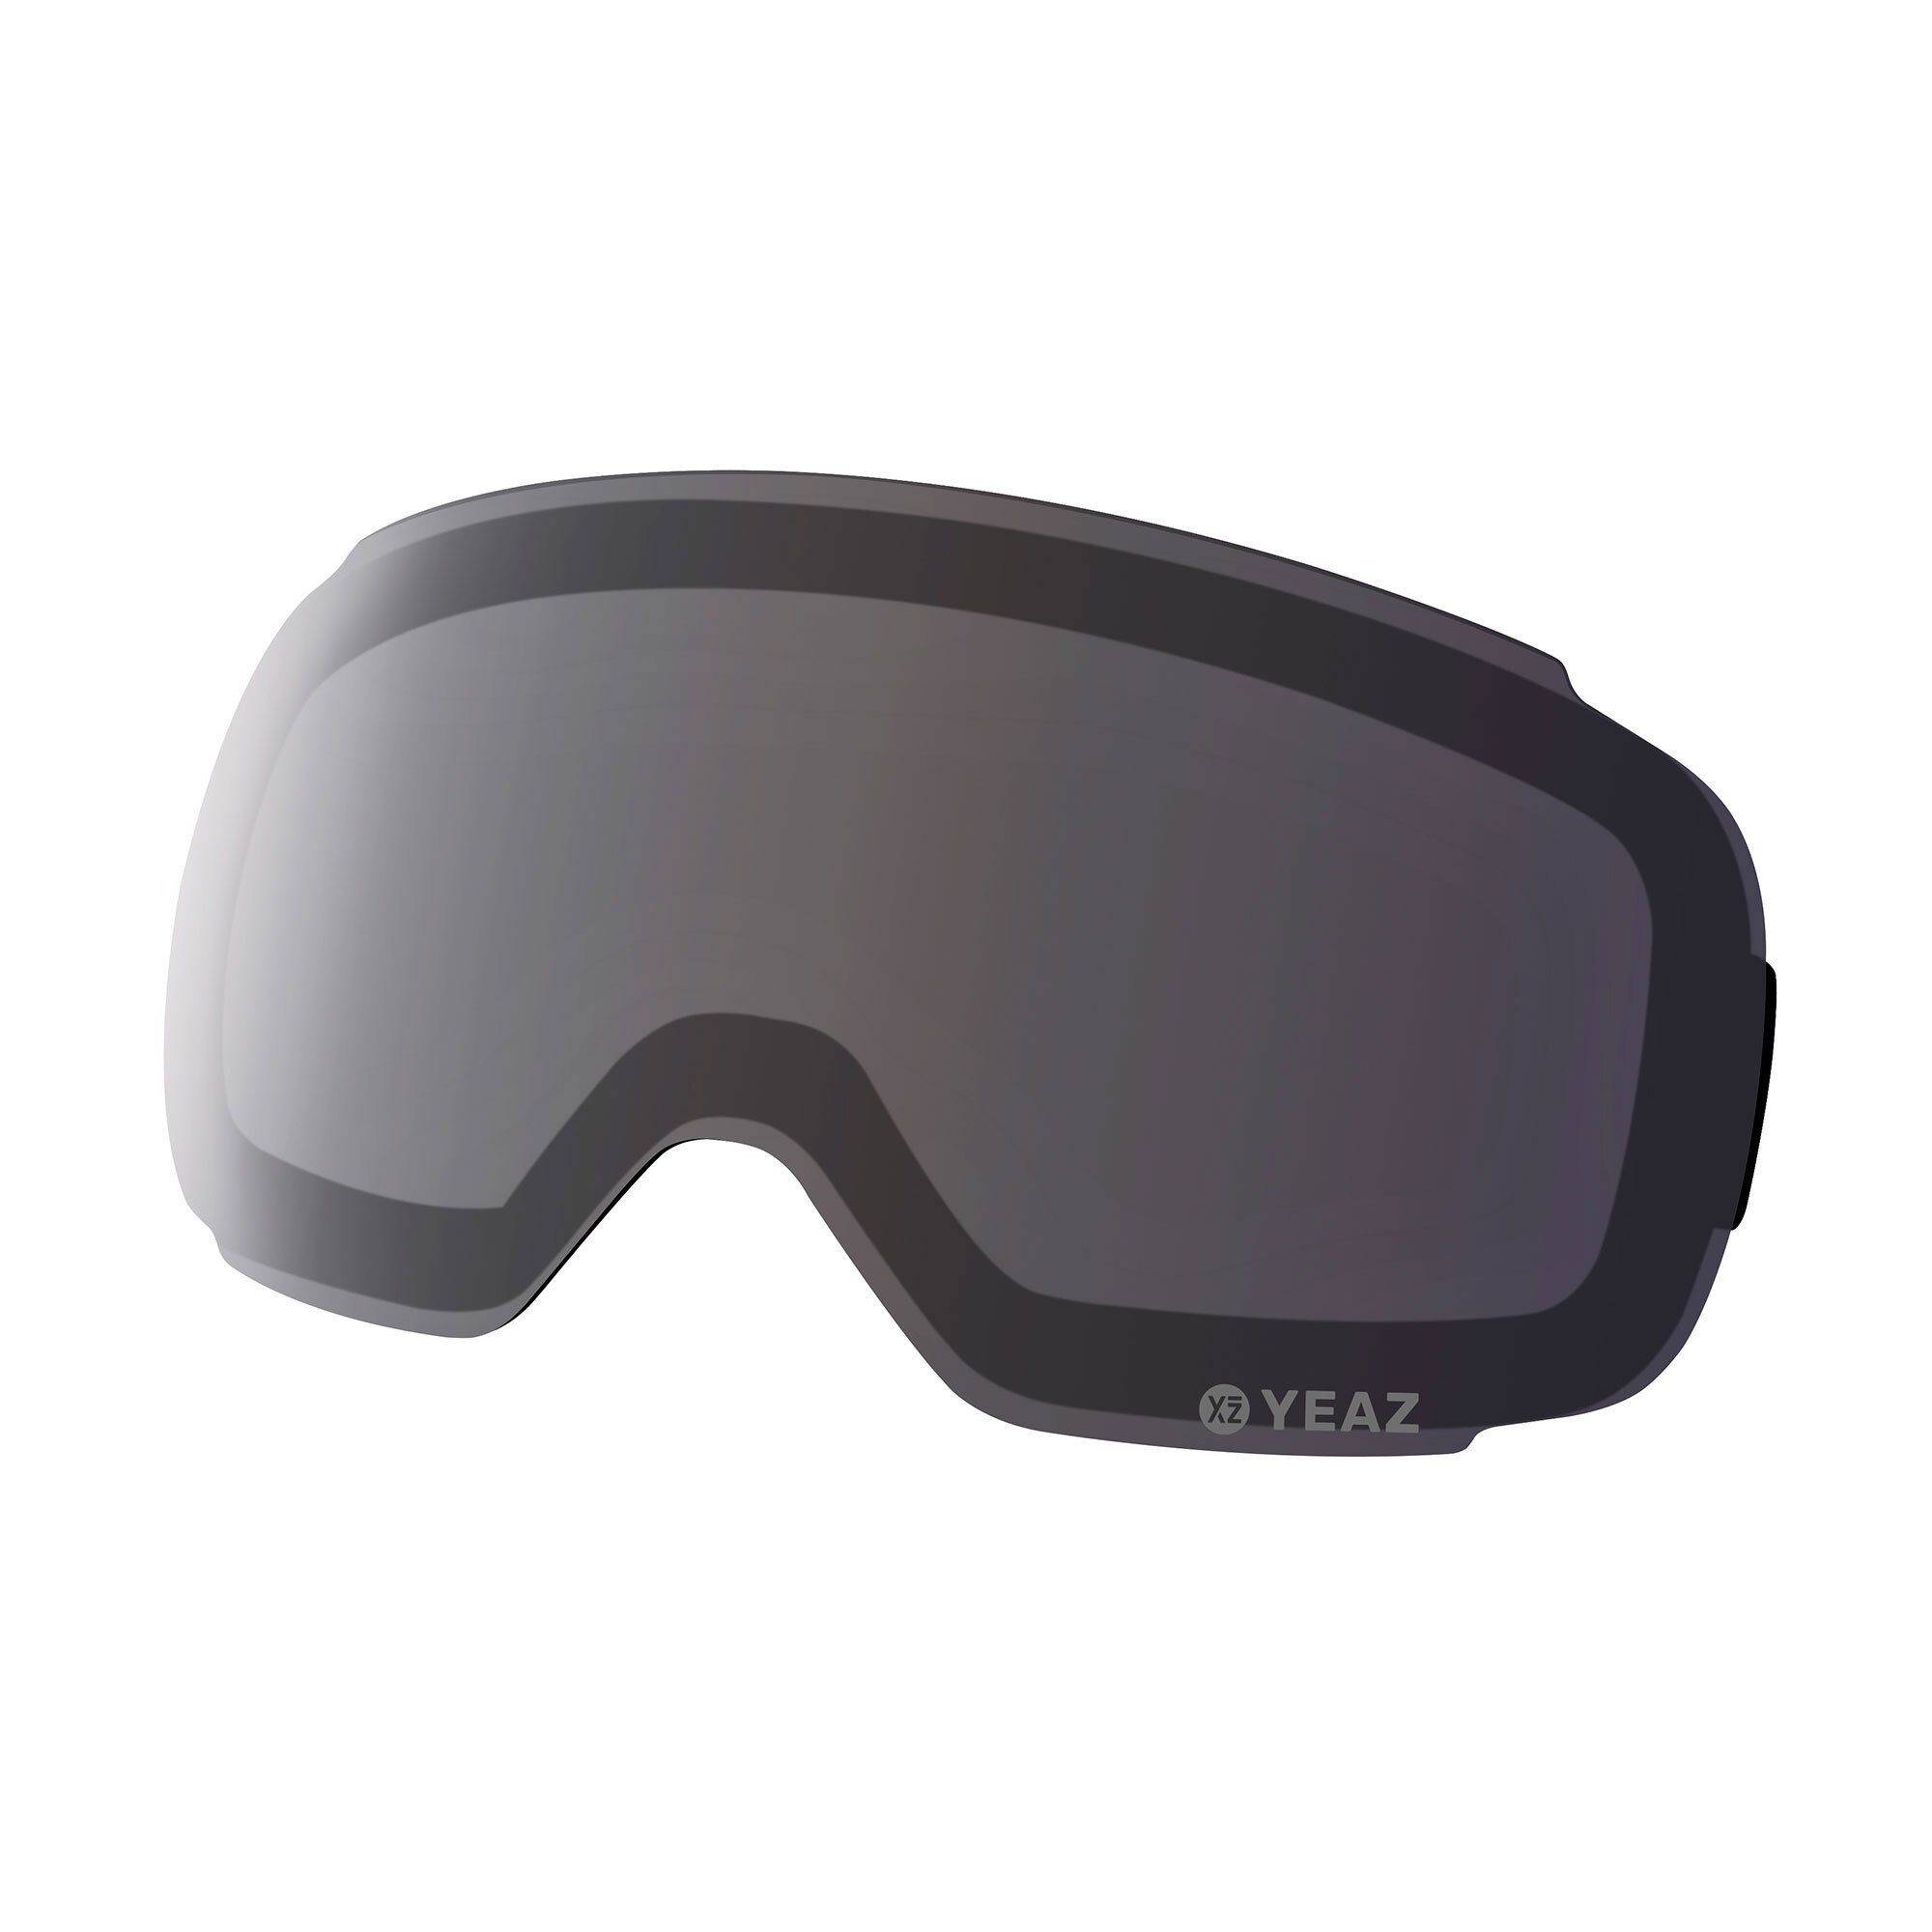 YEAZ Skibrille TWEAK-X wechselglas für ski- snowboardbrille, Ersatzglas für TWEAK-X Skibrille